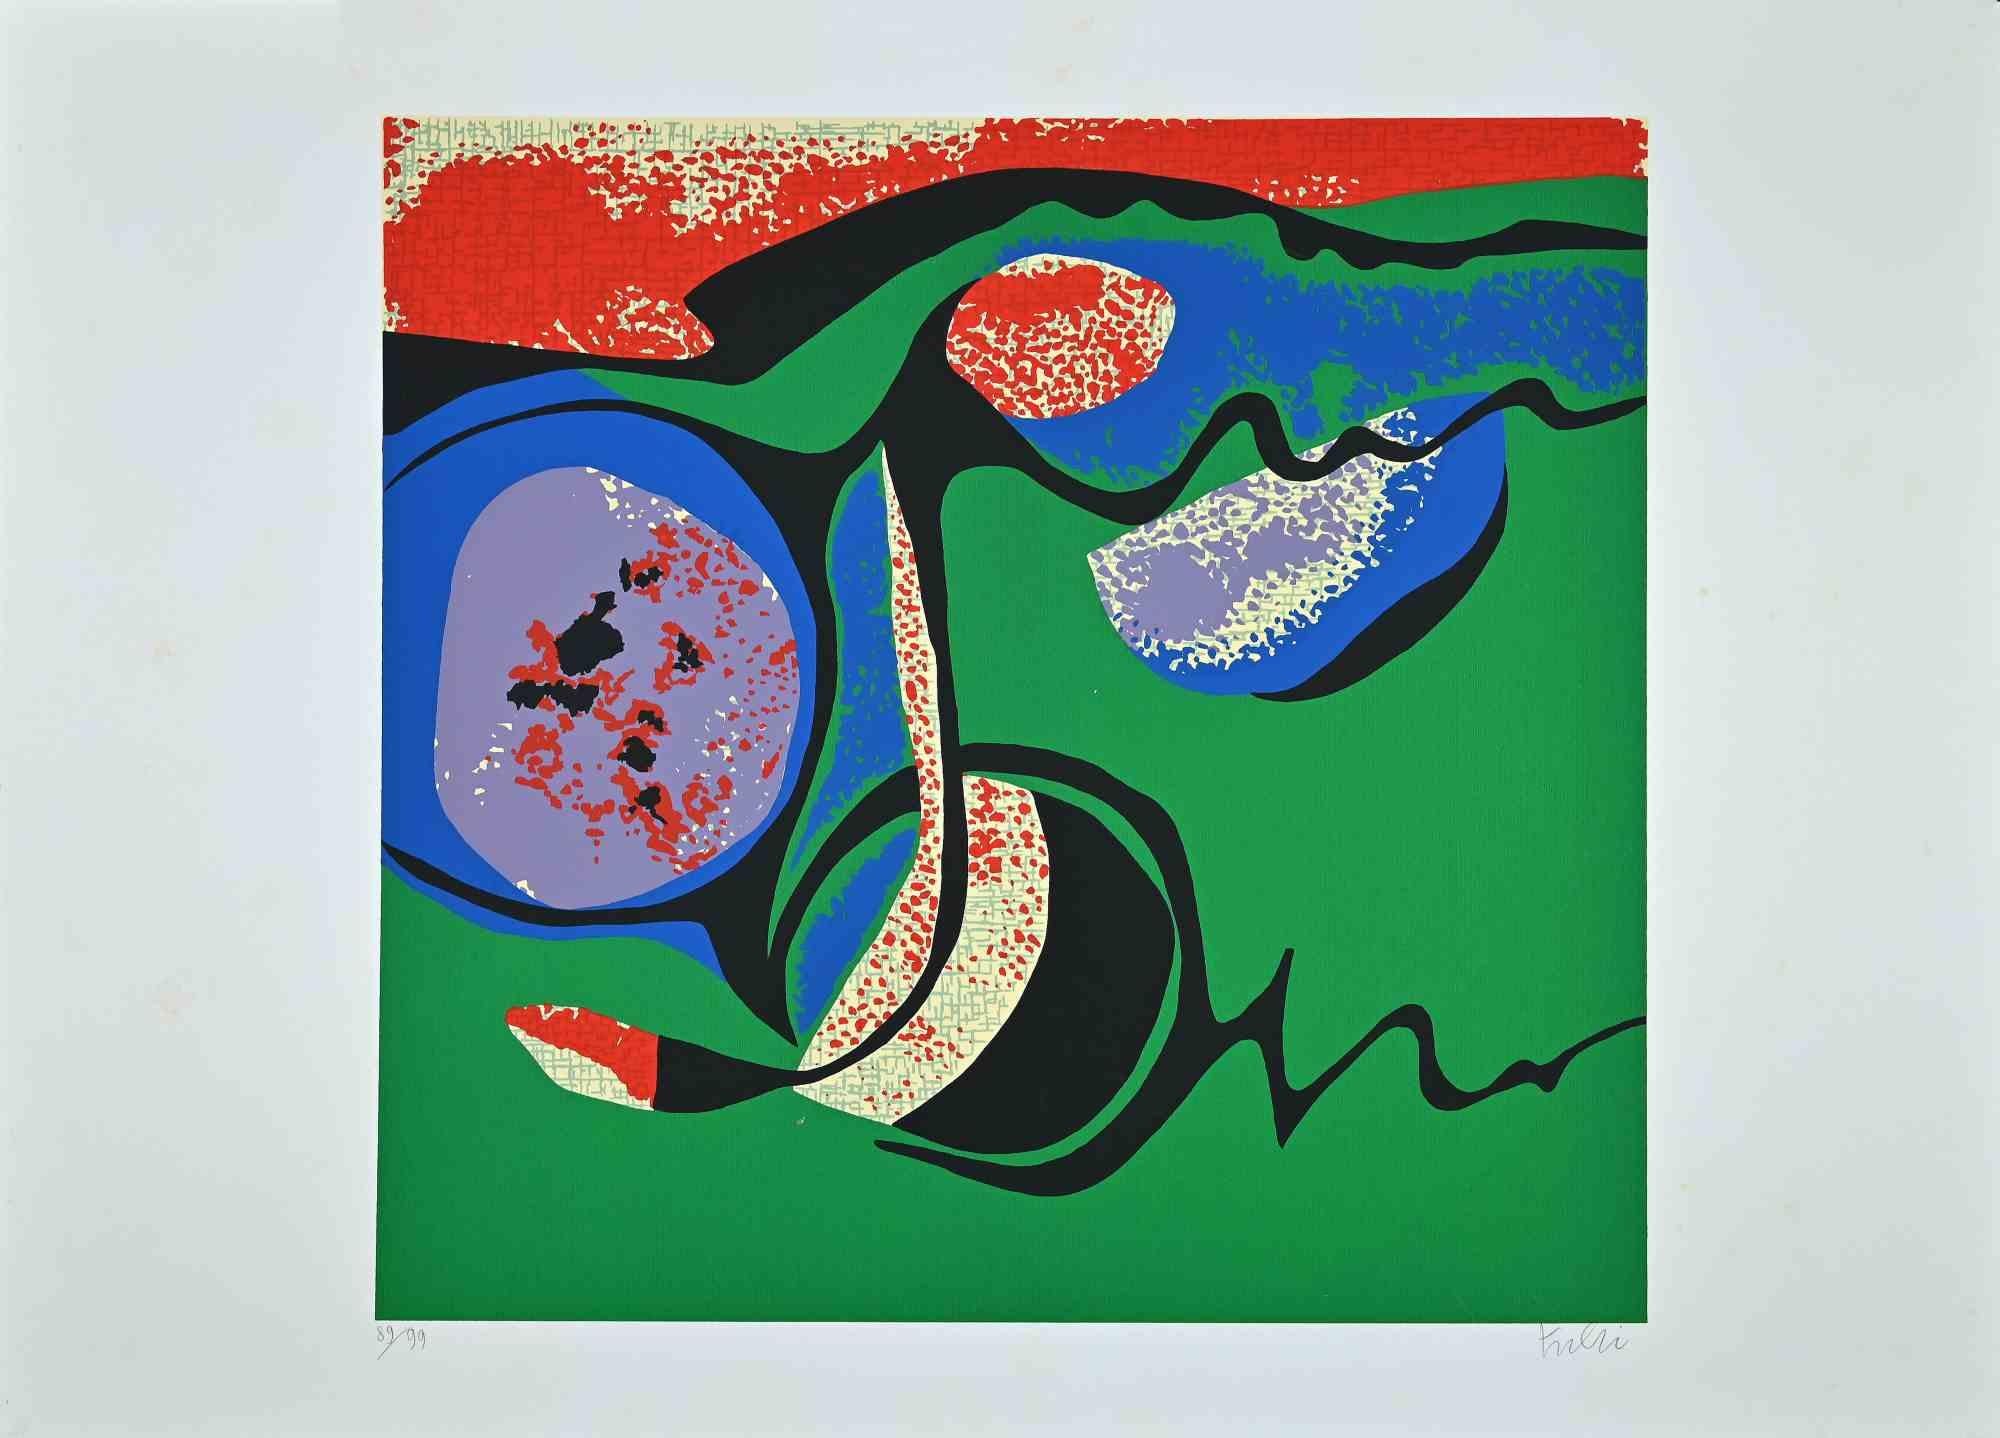 Composition en vert est une sérigraphie colorée réalisée dans les années 1970 par l'artiste italien.  Wladimiro Tulli.
Signé à la main en bas à droite et numéroté au crayon dans la marge inférieure. Édition de 89/99 tirages.

Bonnes conditions.

Une